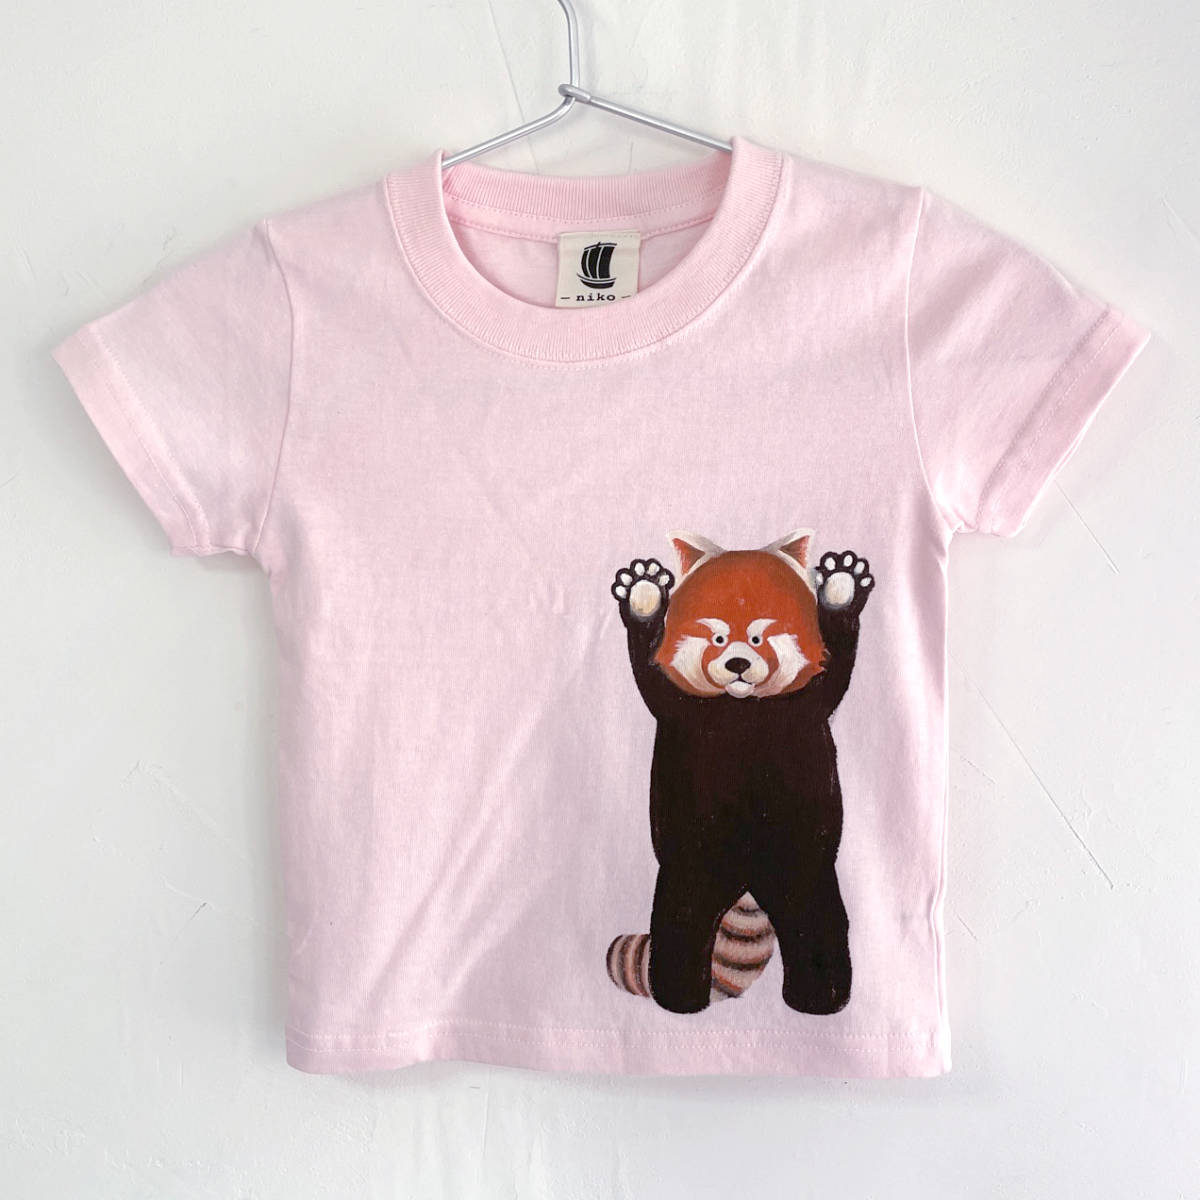 Kinder T-Shirt, Größe 150, Rosa, T-Shirt mit rotem Panda-Print, Weiß, handgefertigt, handgezeichnetes T-Shirt, Tier, Spitzen, Kurzärmeliges T-shirt, 150 (145 ~ 154 cm)